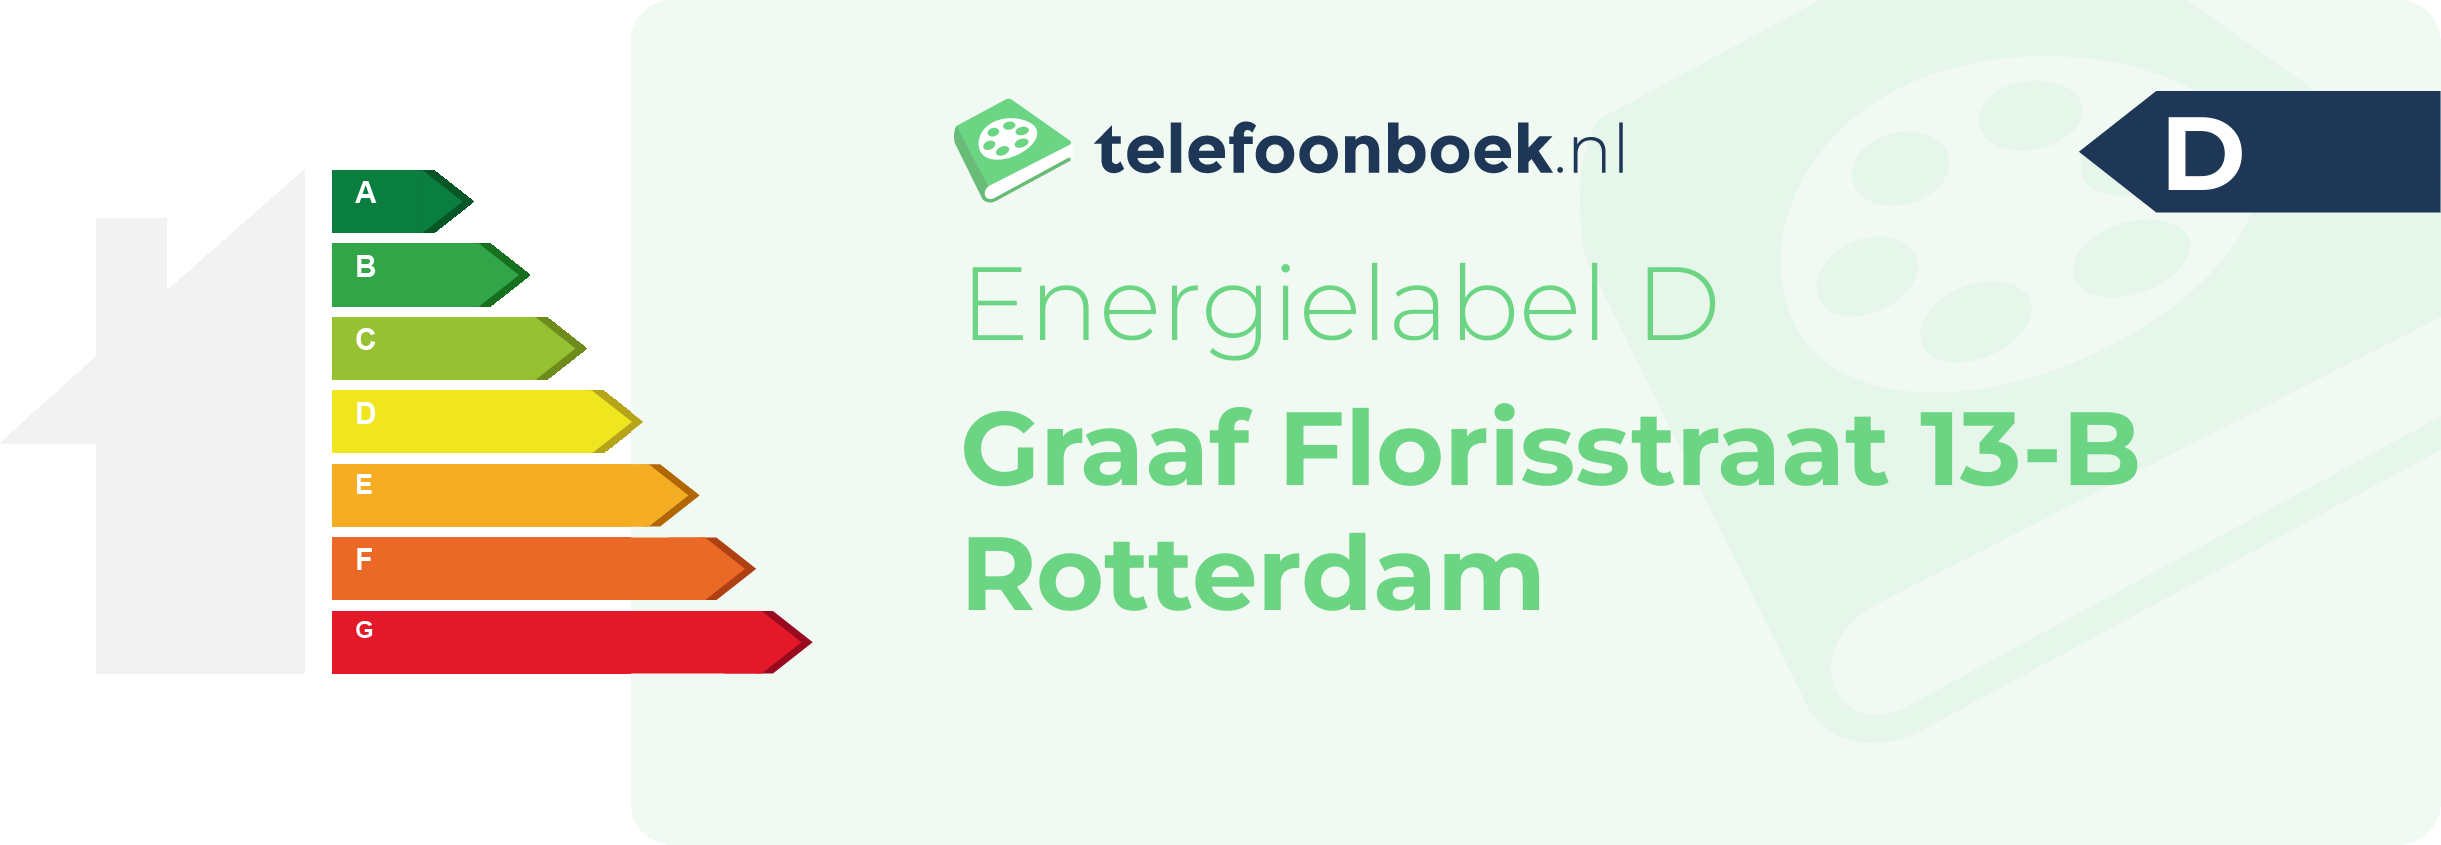 Energielabel Graaf Florisstraat 13-B Rotterdam